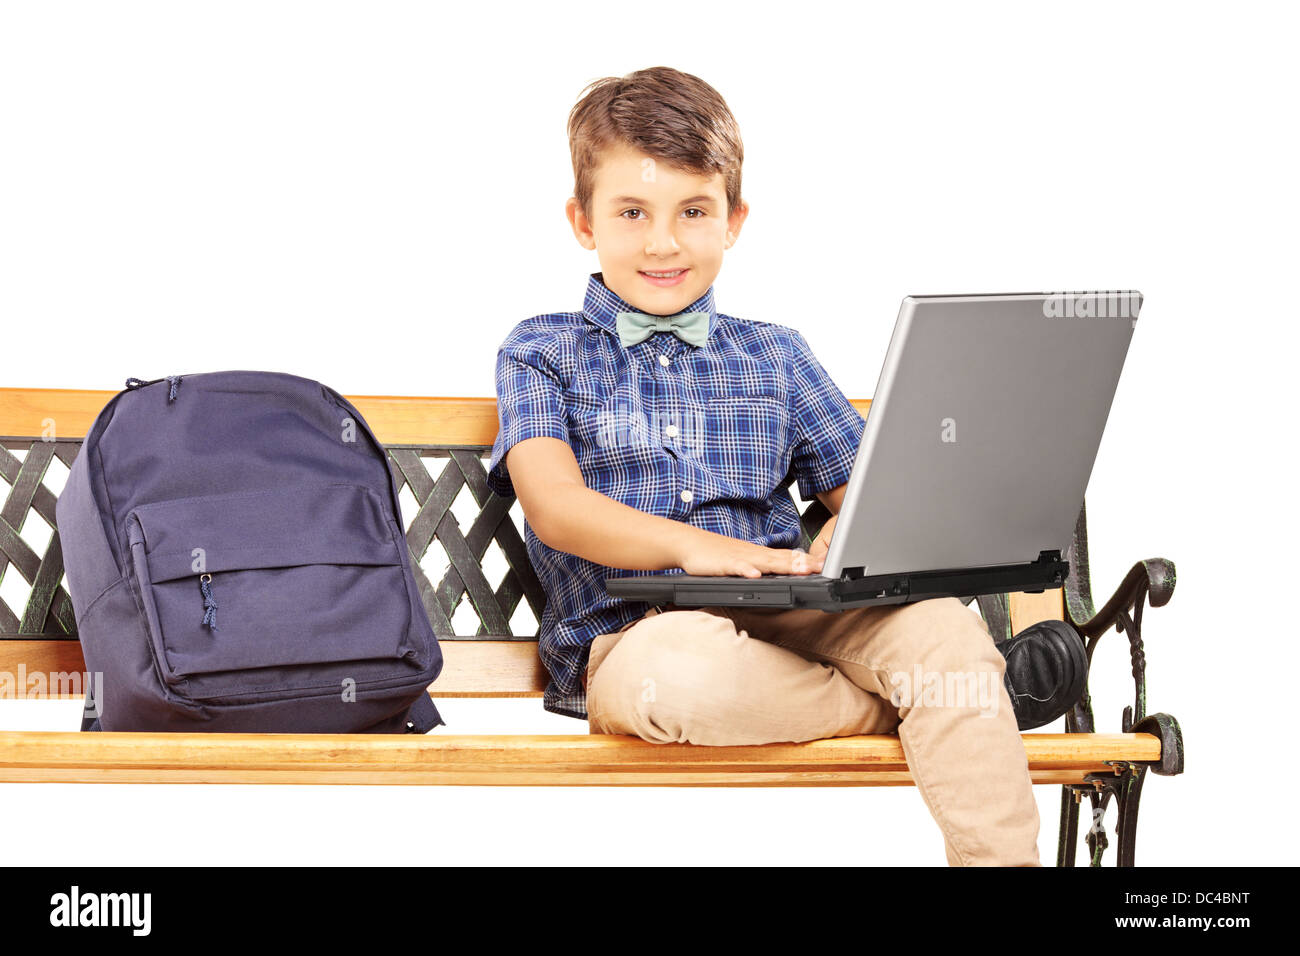 Écolier assis sur un banc en bois avec sac à côté de lui et de travailler sur un ordinateur portable Banque D'Images